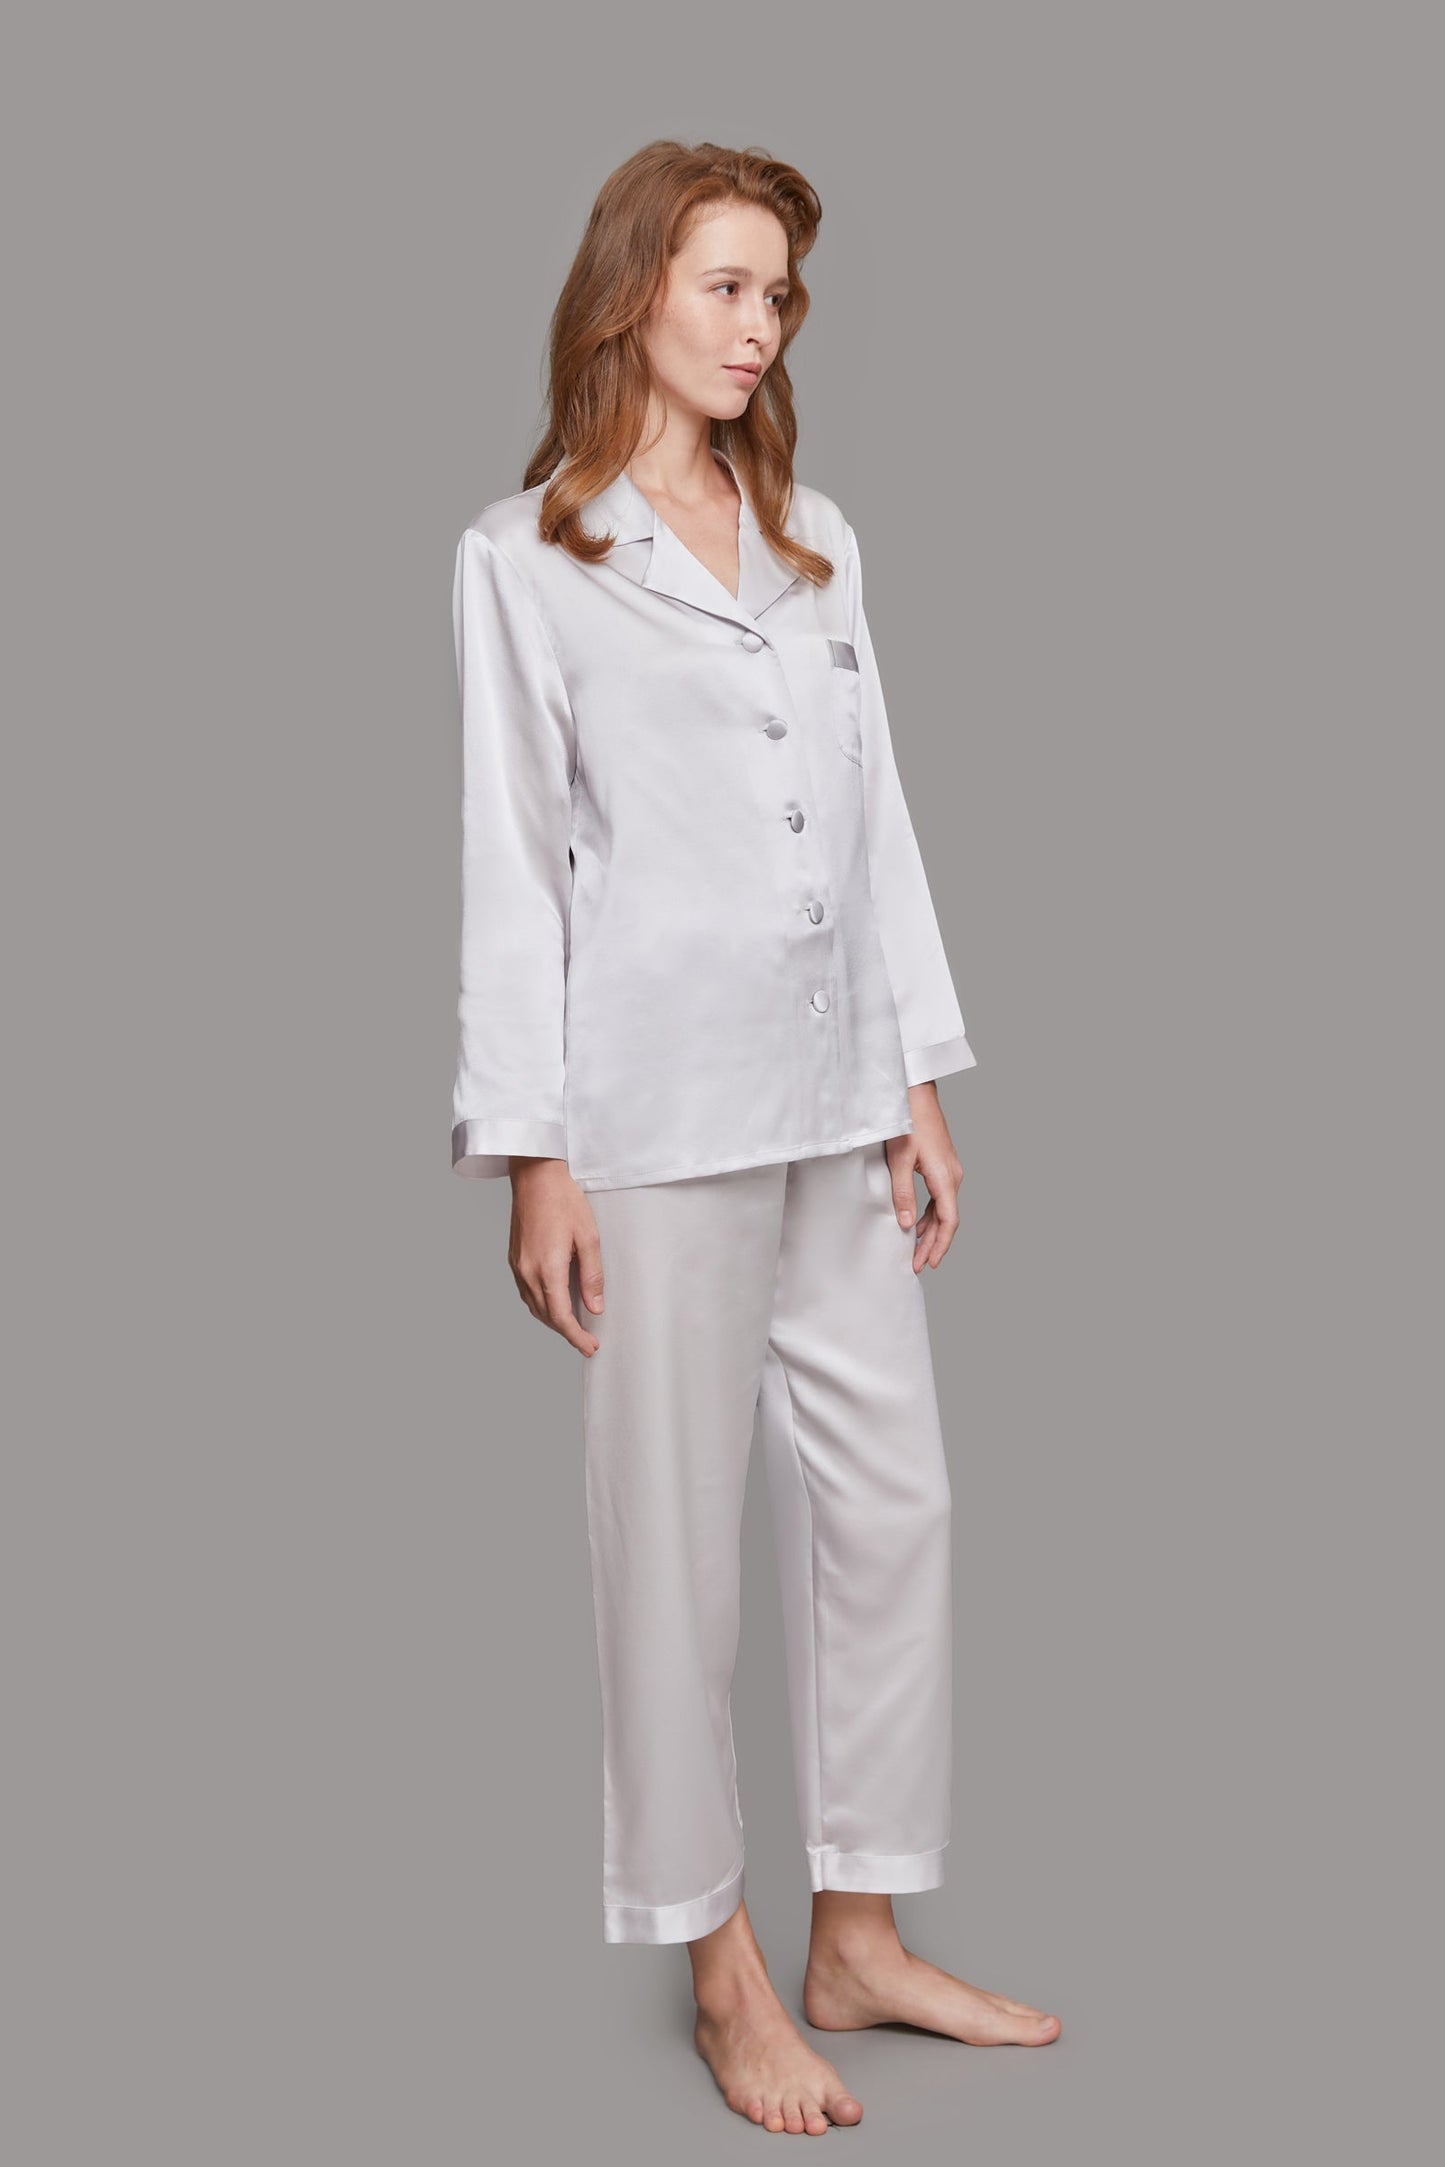 GRALACE Silk Pajamas for Women